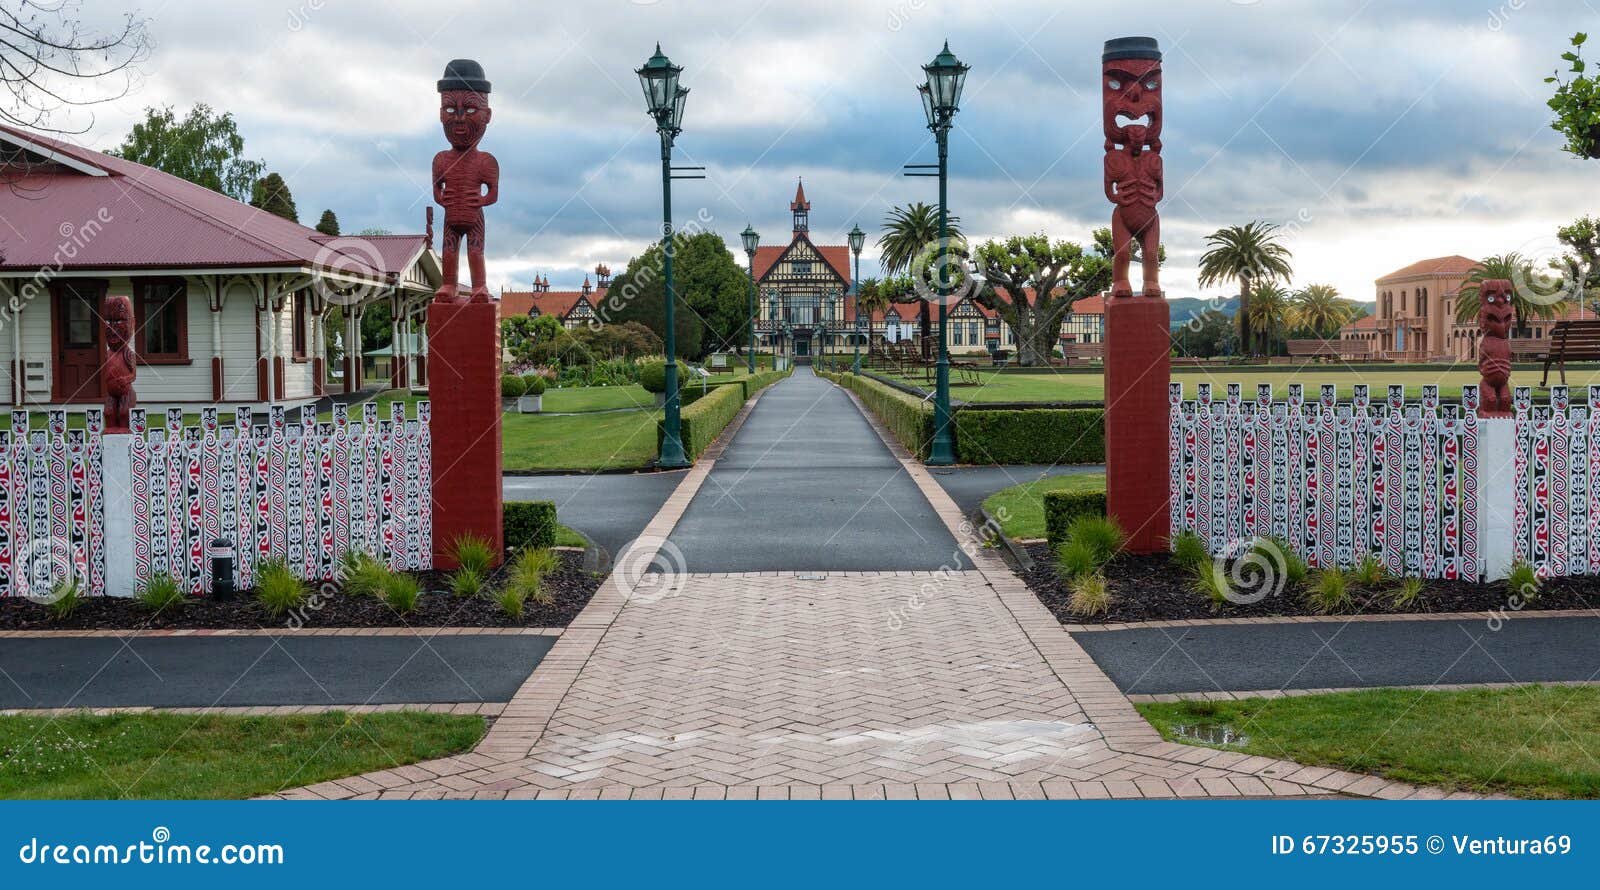 Rotorua Museum And Park, New Zealand Stock Image - Image of historical ...
